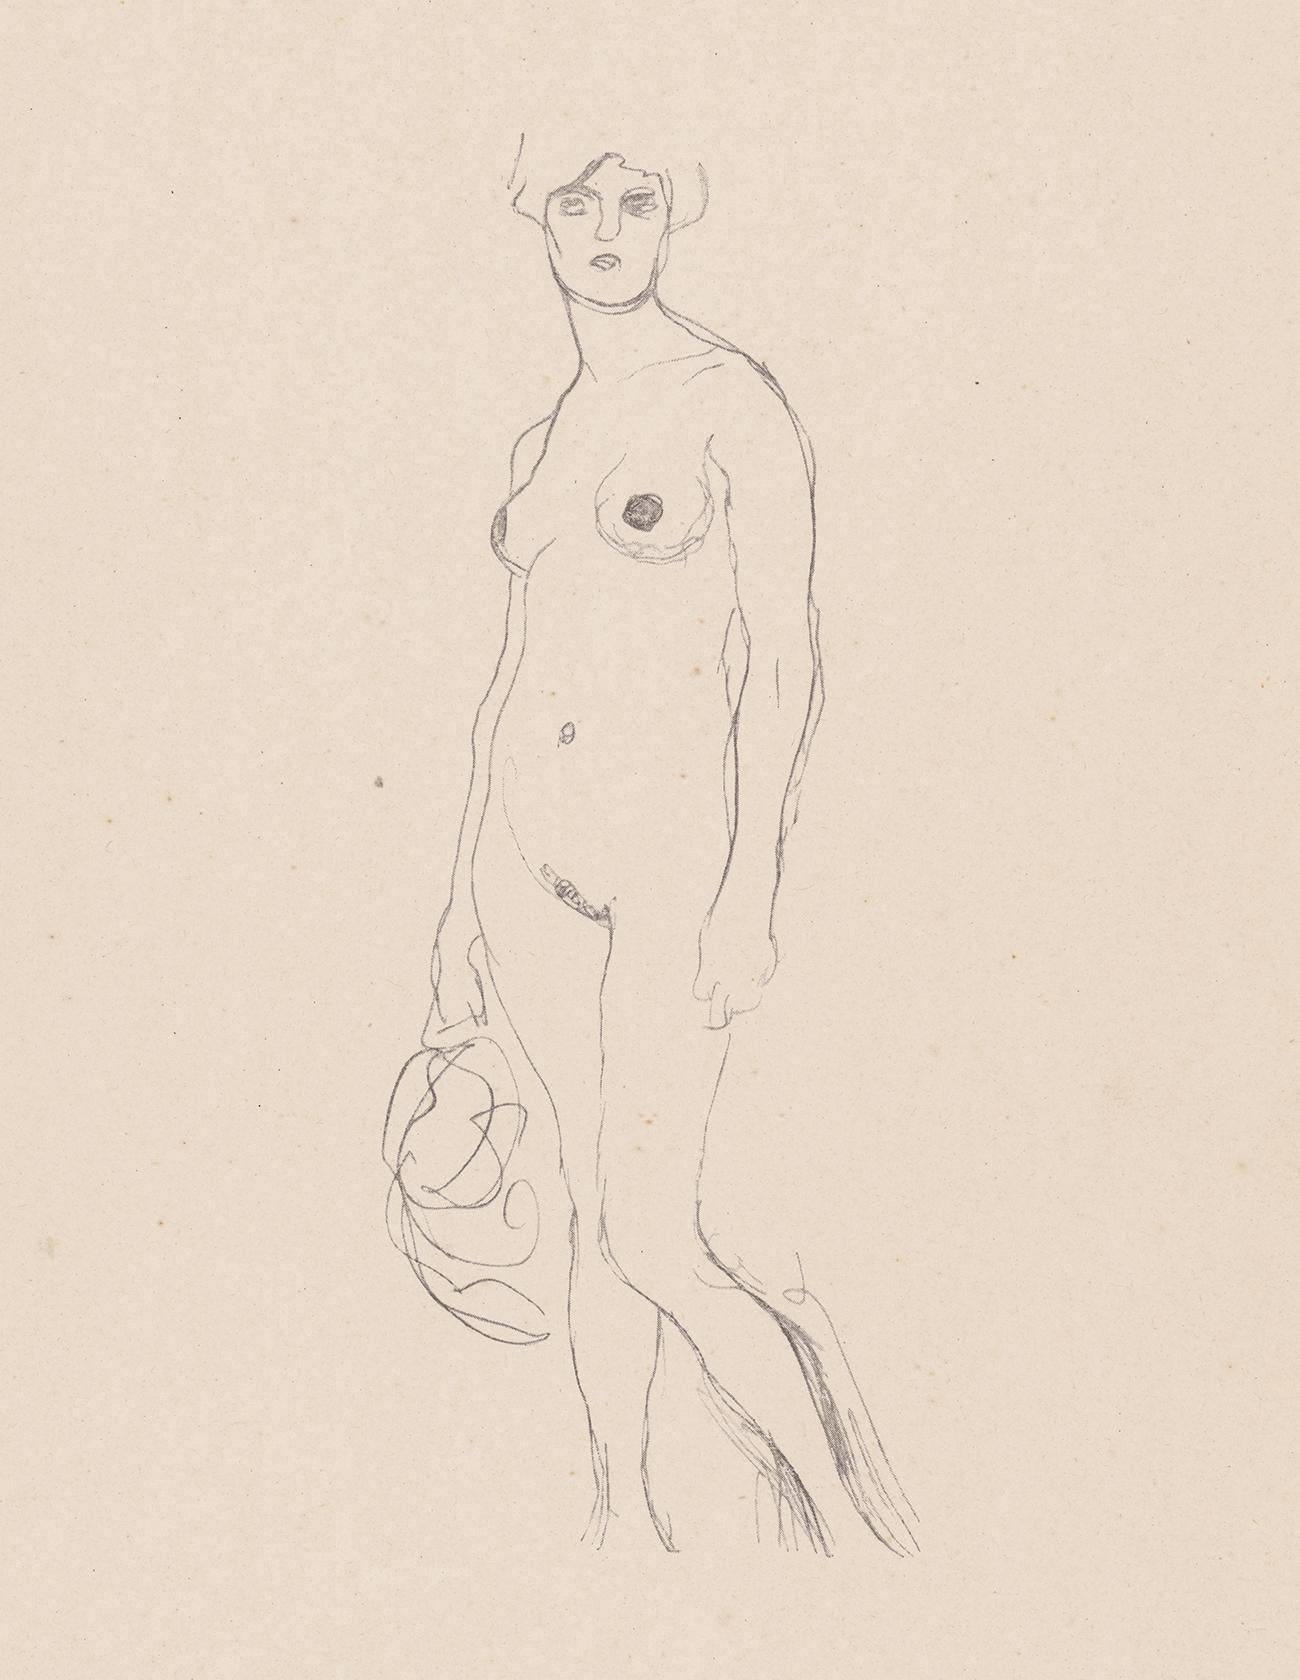 Standing nude, Gustav Klimt Handzeichnungen (Sketch), Thyrsos Verlag, 1922 - Print by (after) Gustav Klimt